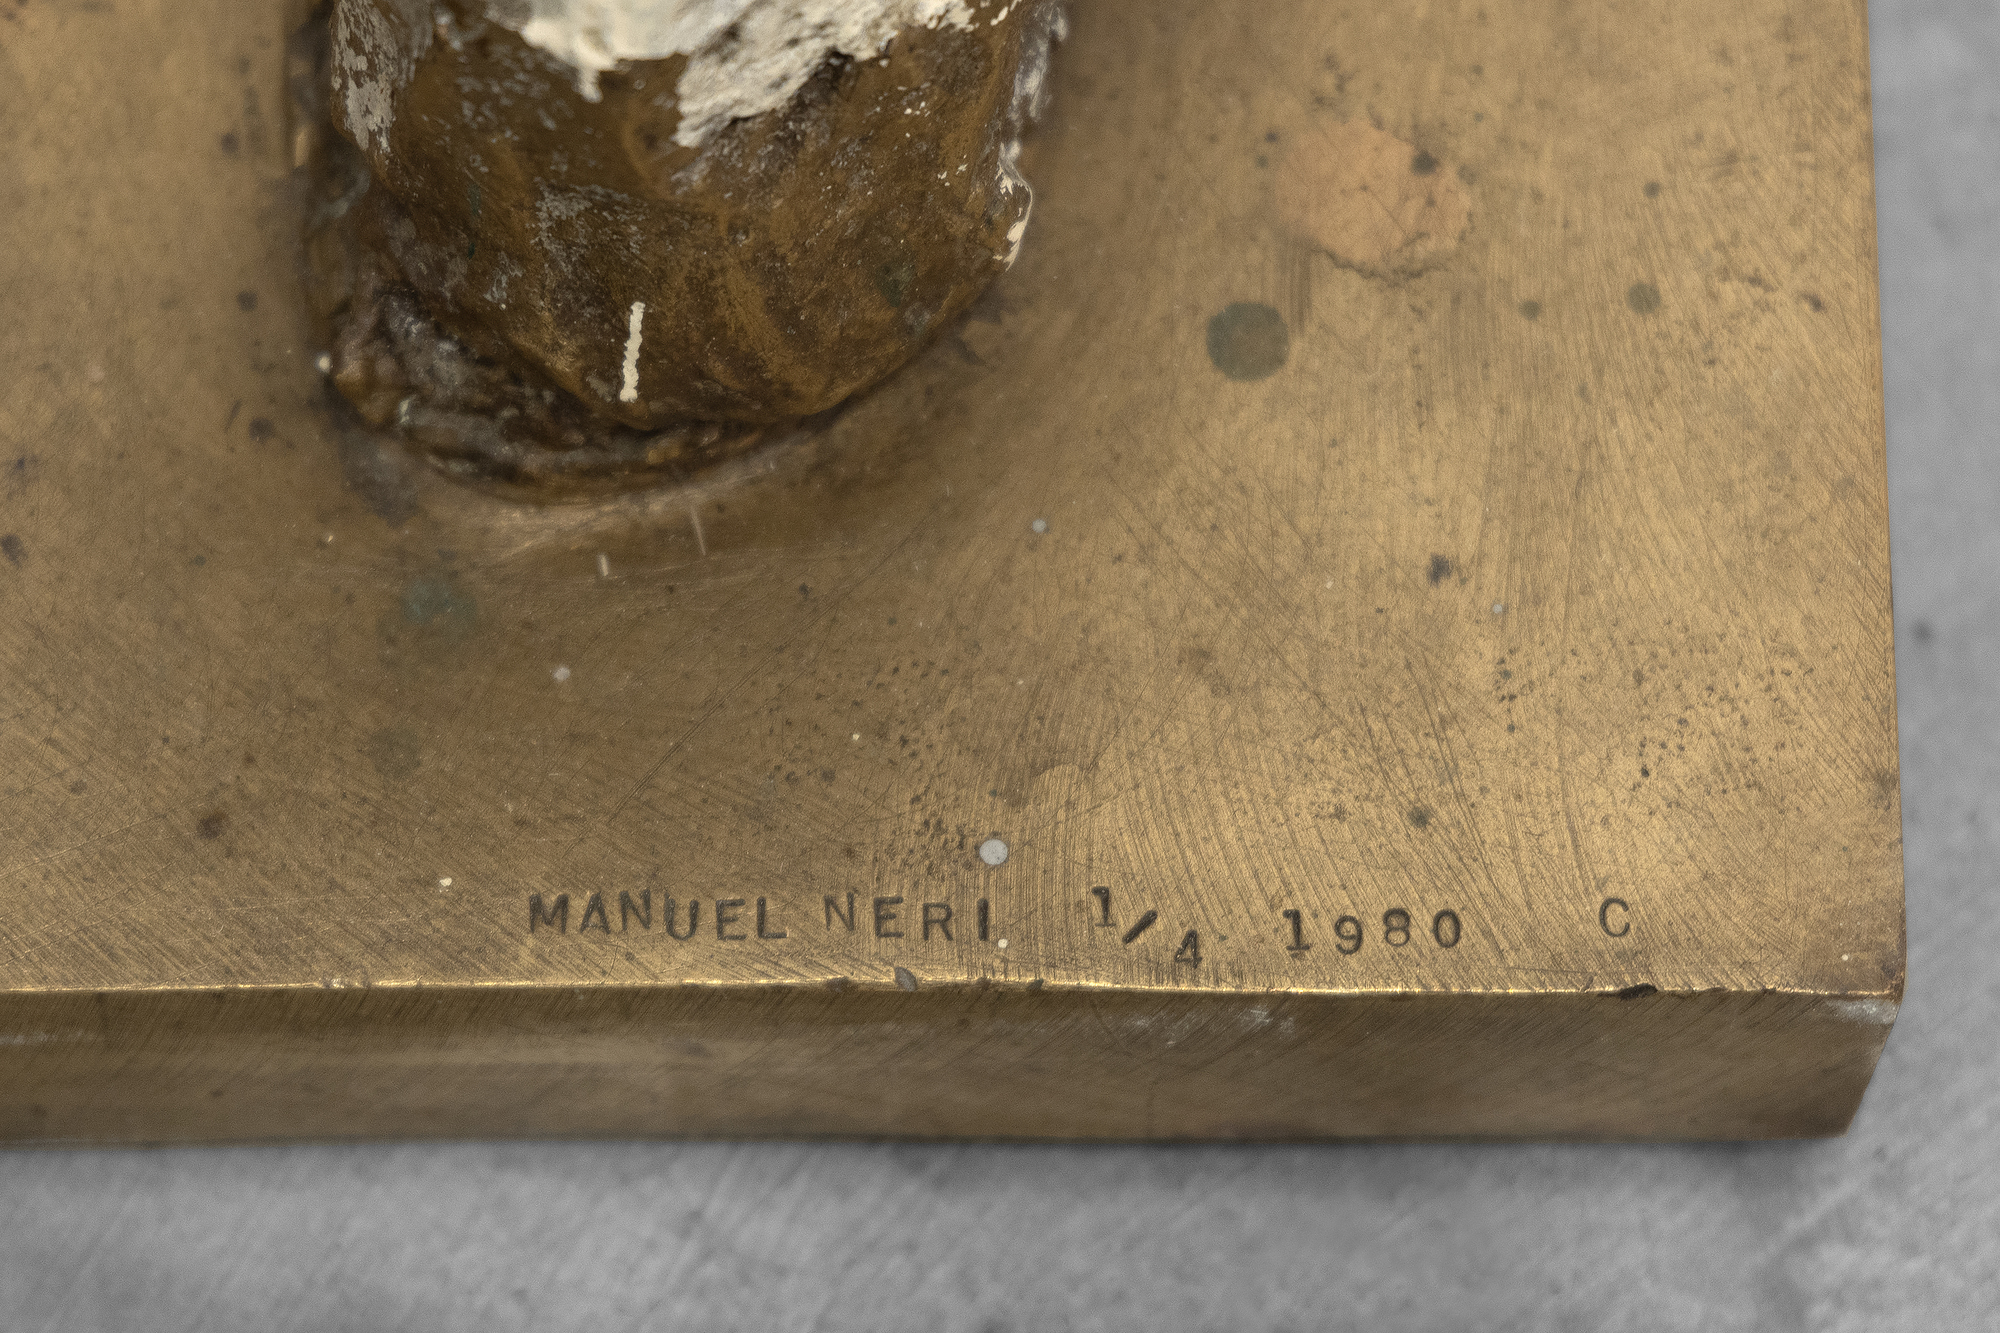 In den späten 1990er Jahren begann Manuel Neri, zahlreiche Gipsskulpturen in Bronze umzuwandeln, wobei er häufig zu früheren Werken zurückkehrte, um neu erdachte Wiedergaben der einzelnen Stücke zu schaffen. Diese Serien, die sich in Form und Oberflächendetails kaum voneinander unterscheiden, erforschen die Auswirkungen unterschiedlicher Farbschemata und Markierungen, die durch Einschneiden, Pinseln, Schaben oder Schichtung von Materialien entstehen. Durch das Experimentieren mit verschiedenen Markierungstechniken konnte Neri das Zusammenspiel von Form, Farbe, Textur und Licht erkunden. Im Zusammenhang mit der Stehenden Figur Nr. 3 beschränkte Neri seine Palette auf ein analoges Farbschema und verdünnte die Farbe, um subtile Abstufungen zu erzeugen, die das glatte, raffinierte Äußere der Skulptur hervorheben.